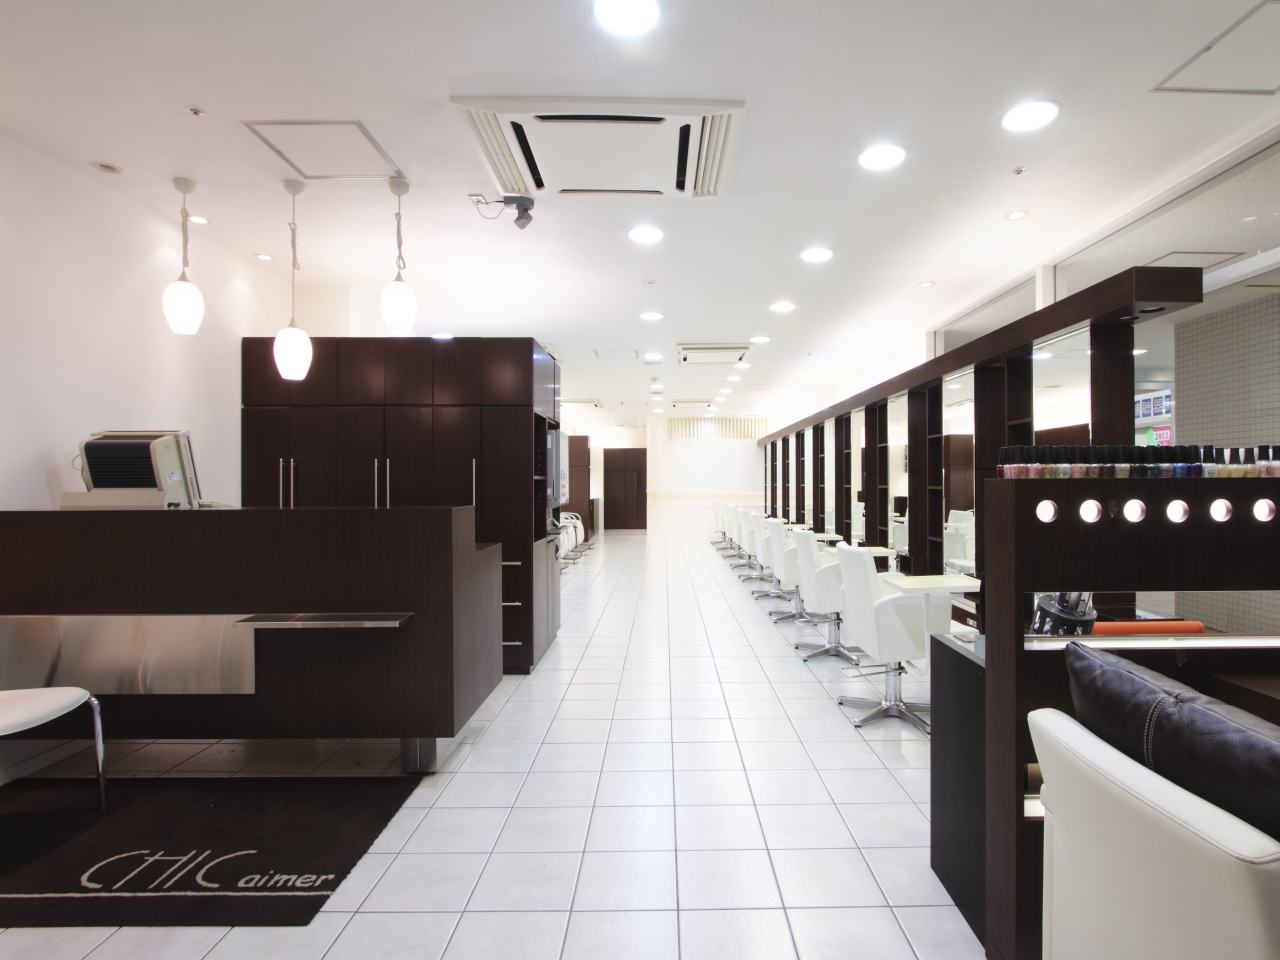 インスタで人気 熊谷 深谷 本庄でパーマが得意な美容師 美容室7選 Beautify おすすめ美容室の口コミ ランキング情報